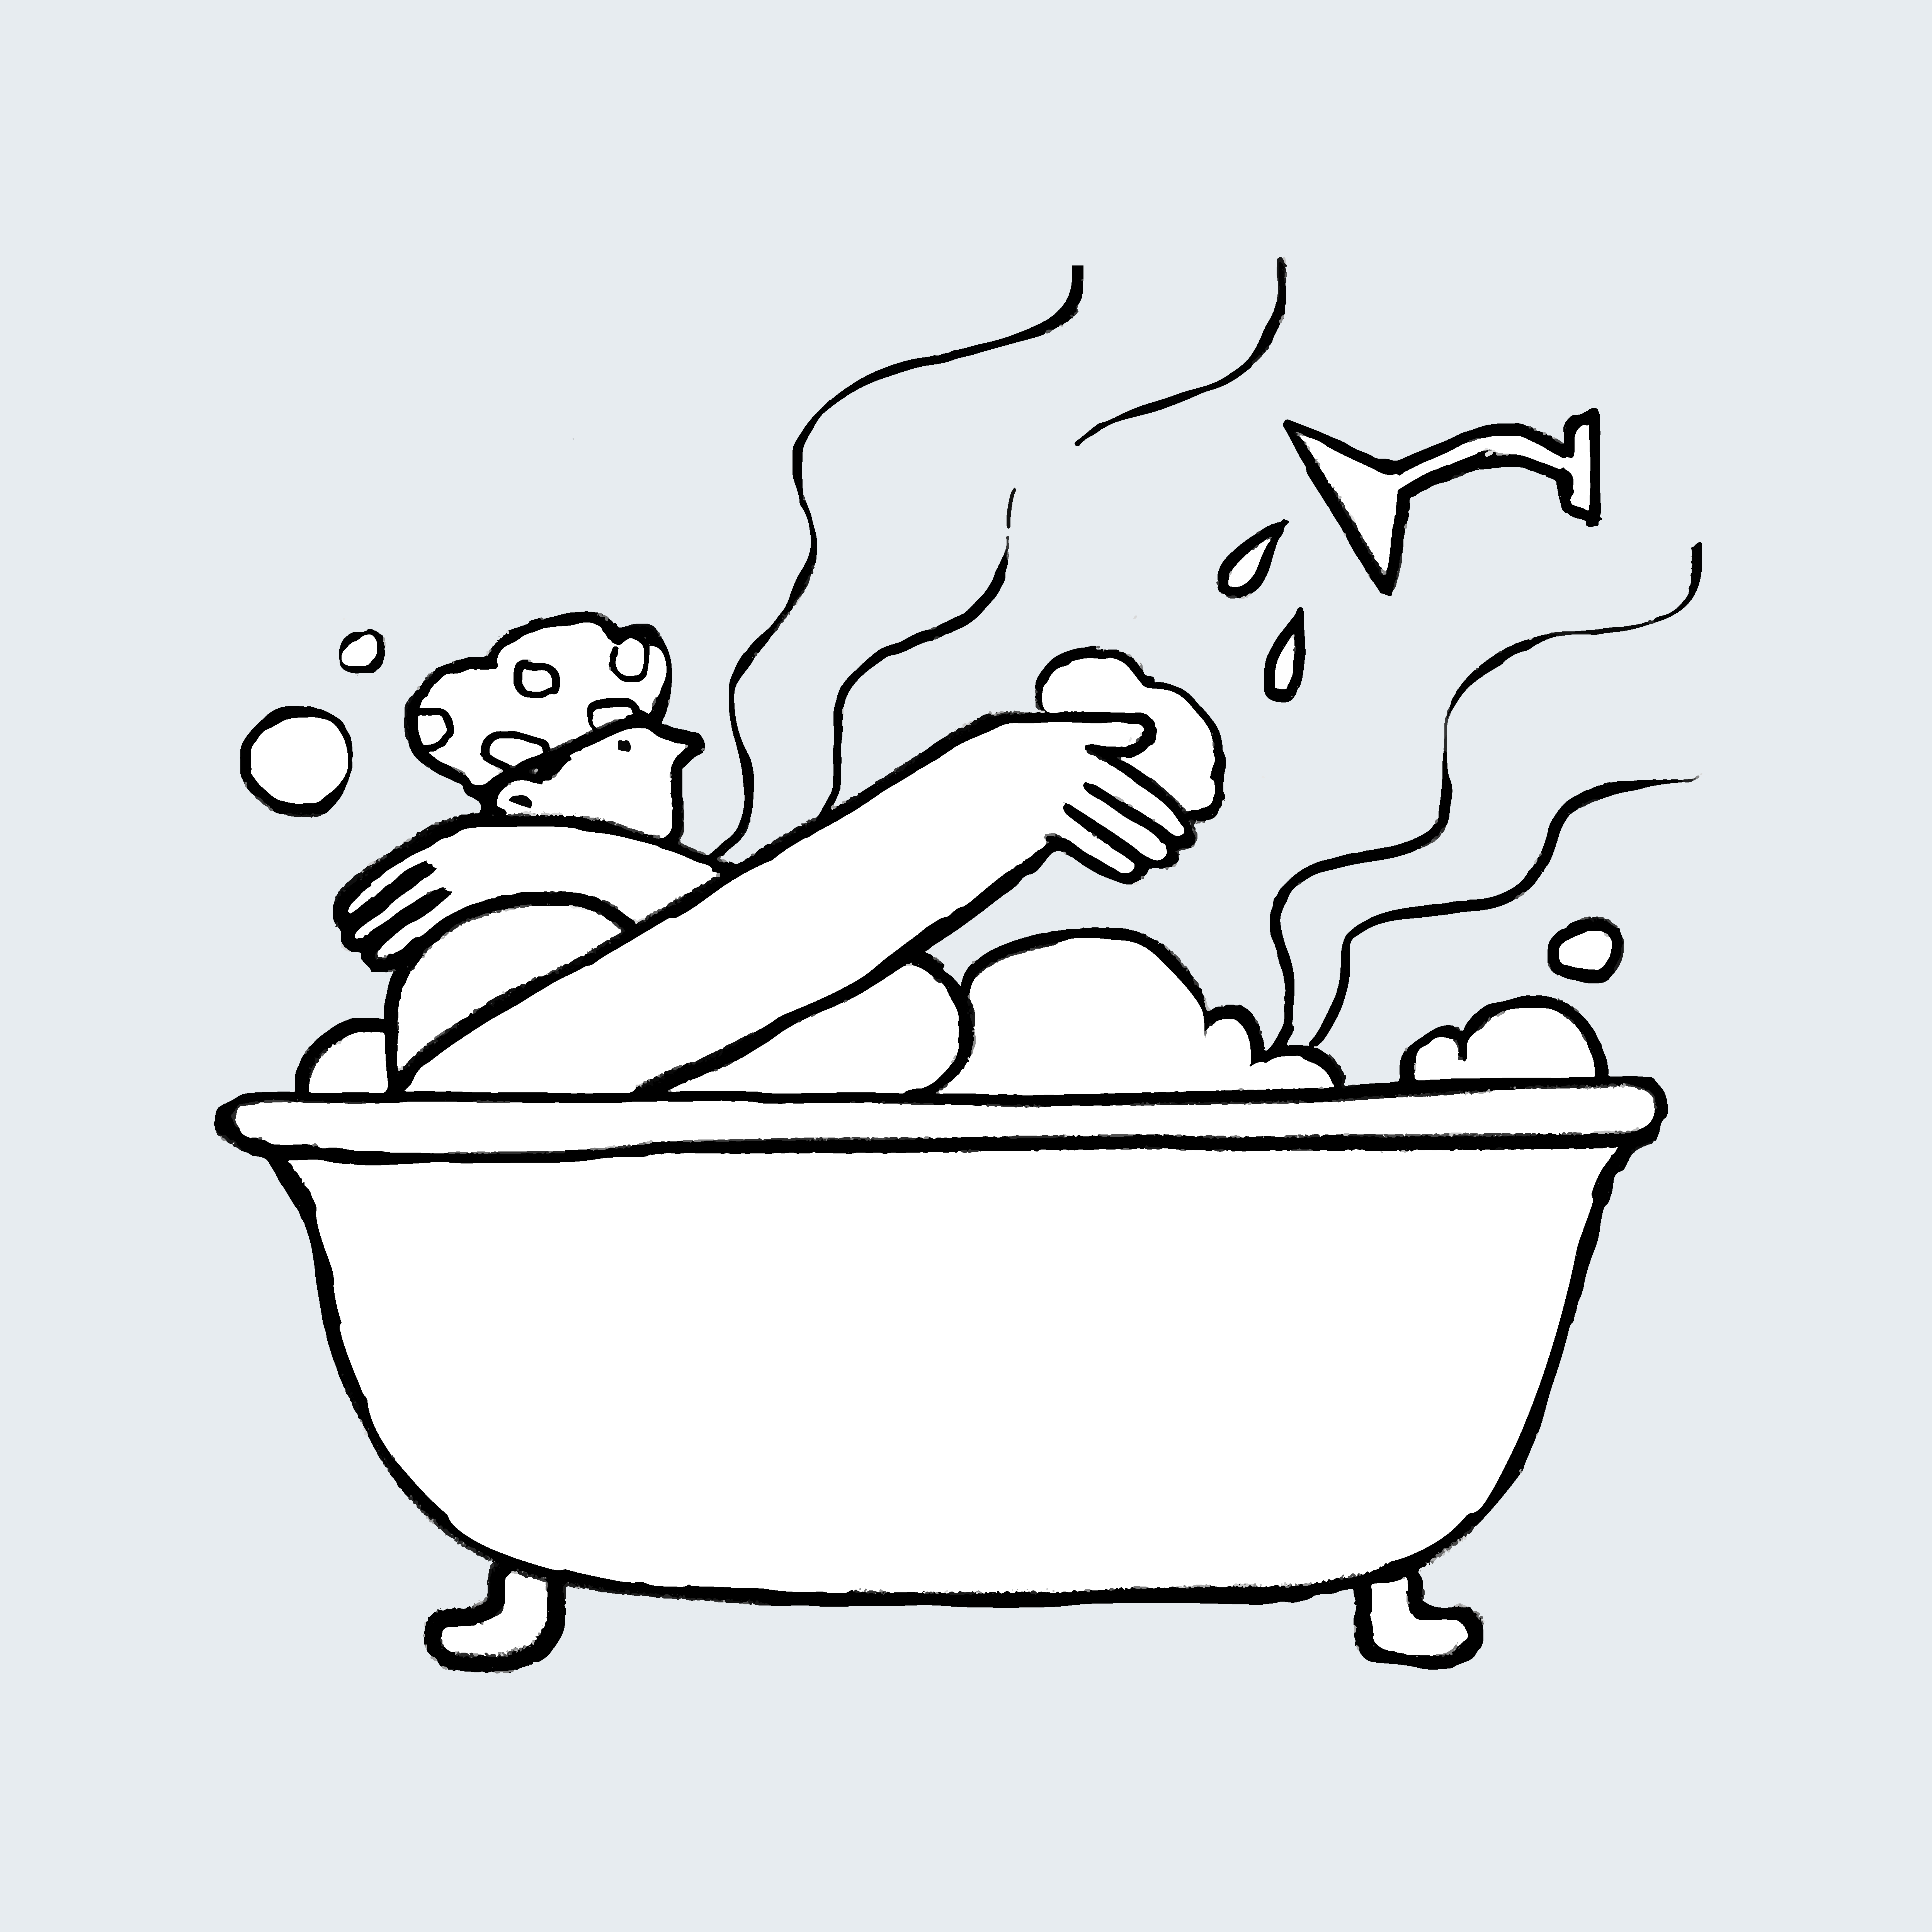 The Broken Hot Tub